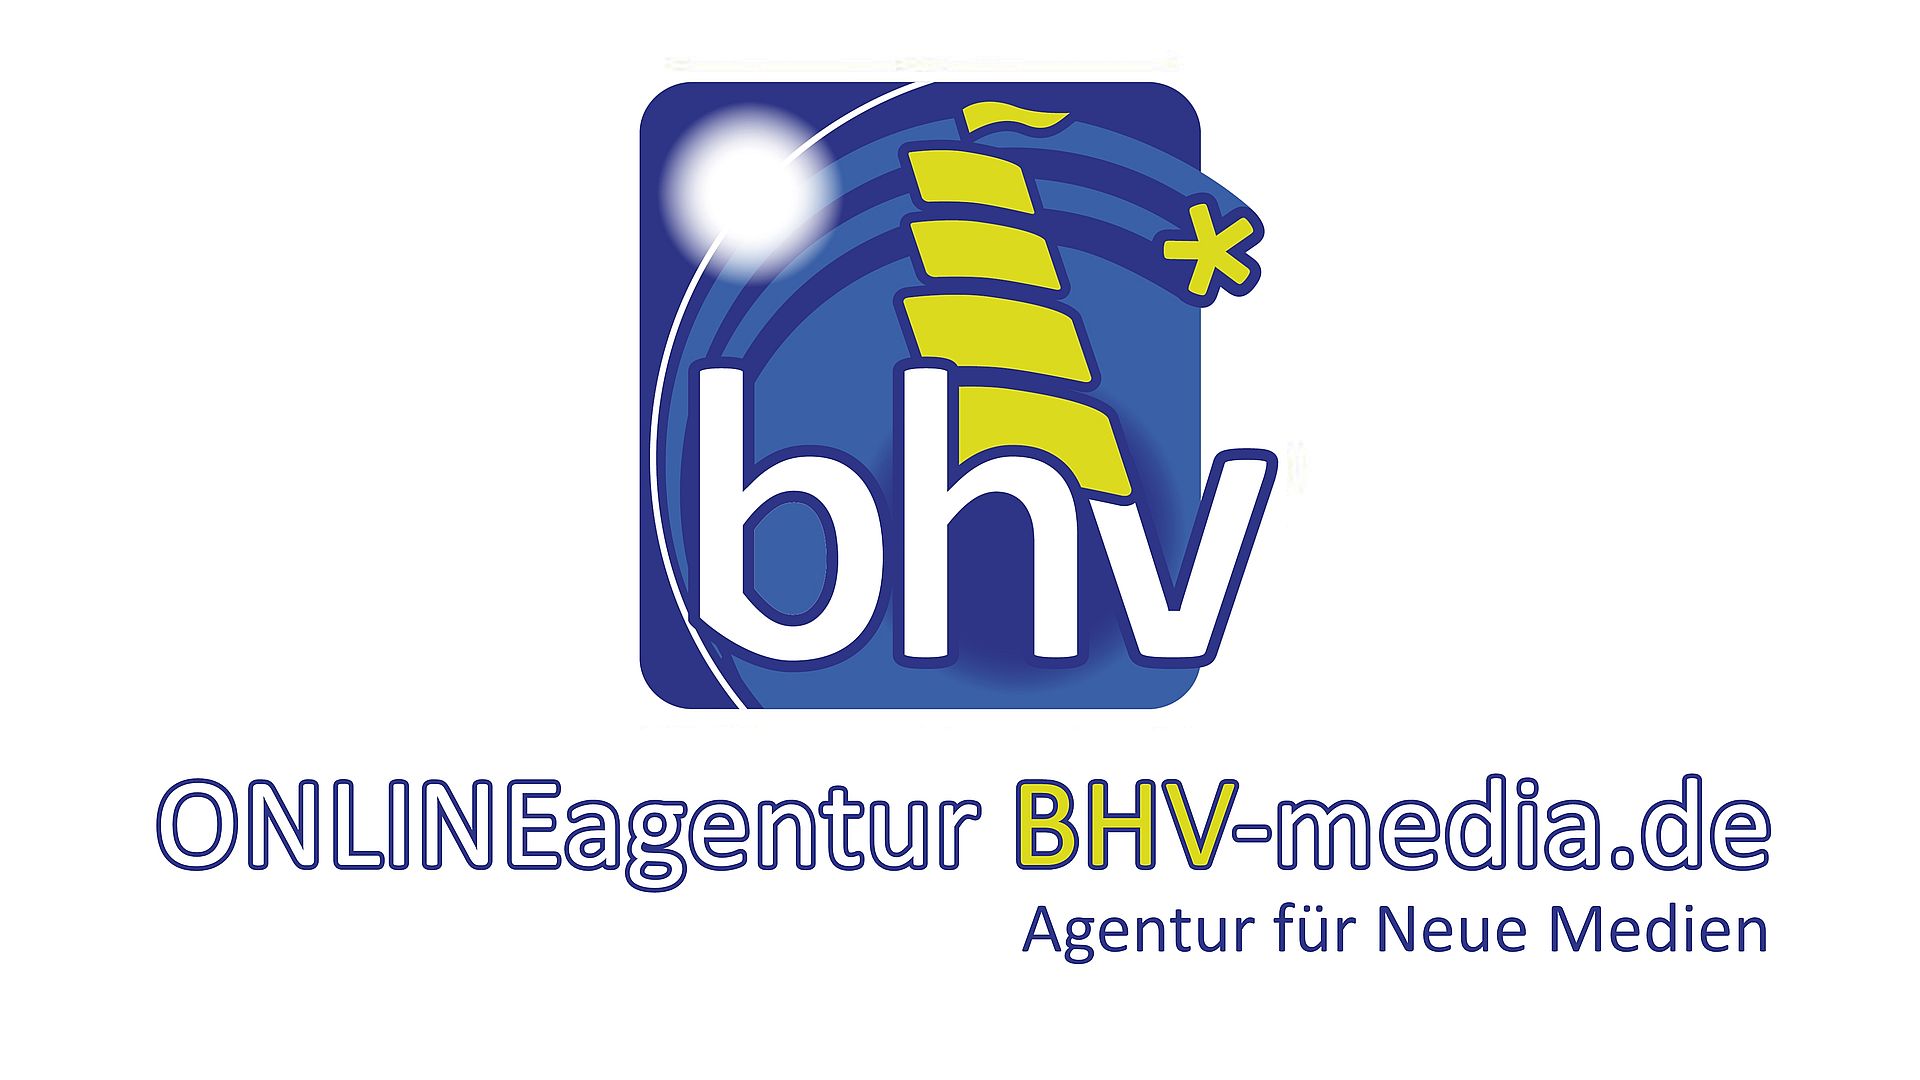 BHV-media.de